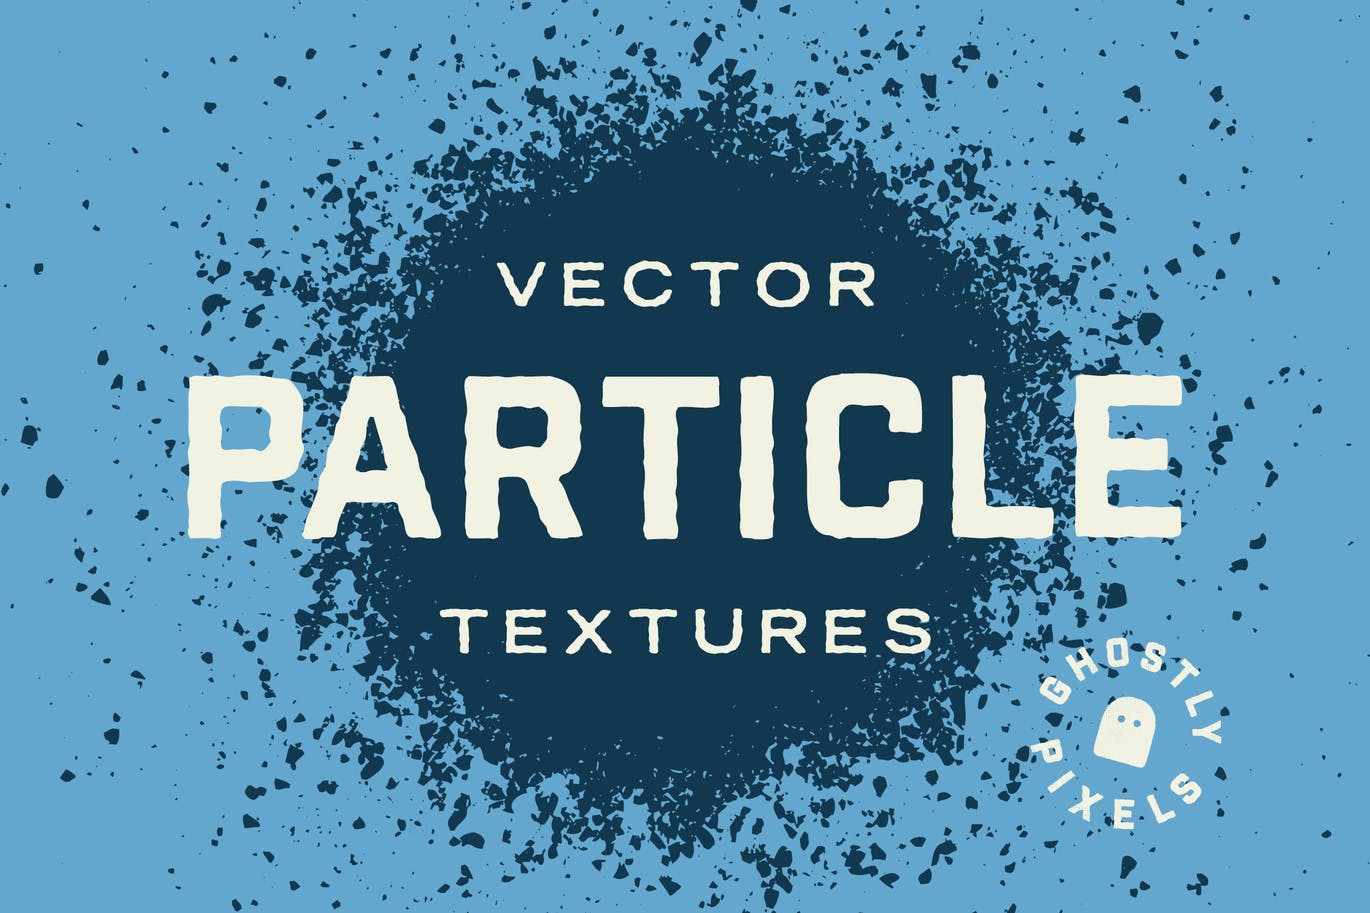 粒子矢量纹理素材 10 Vector Particle Textures设计素材模板